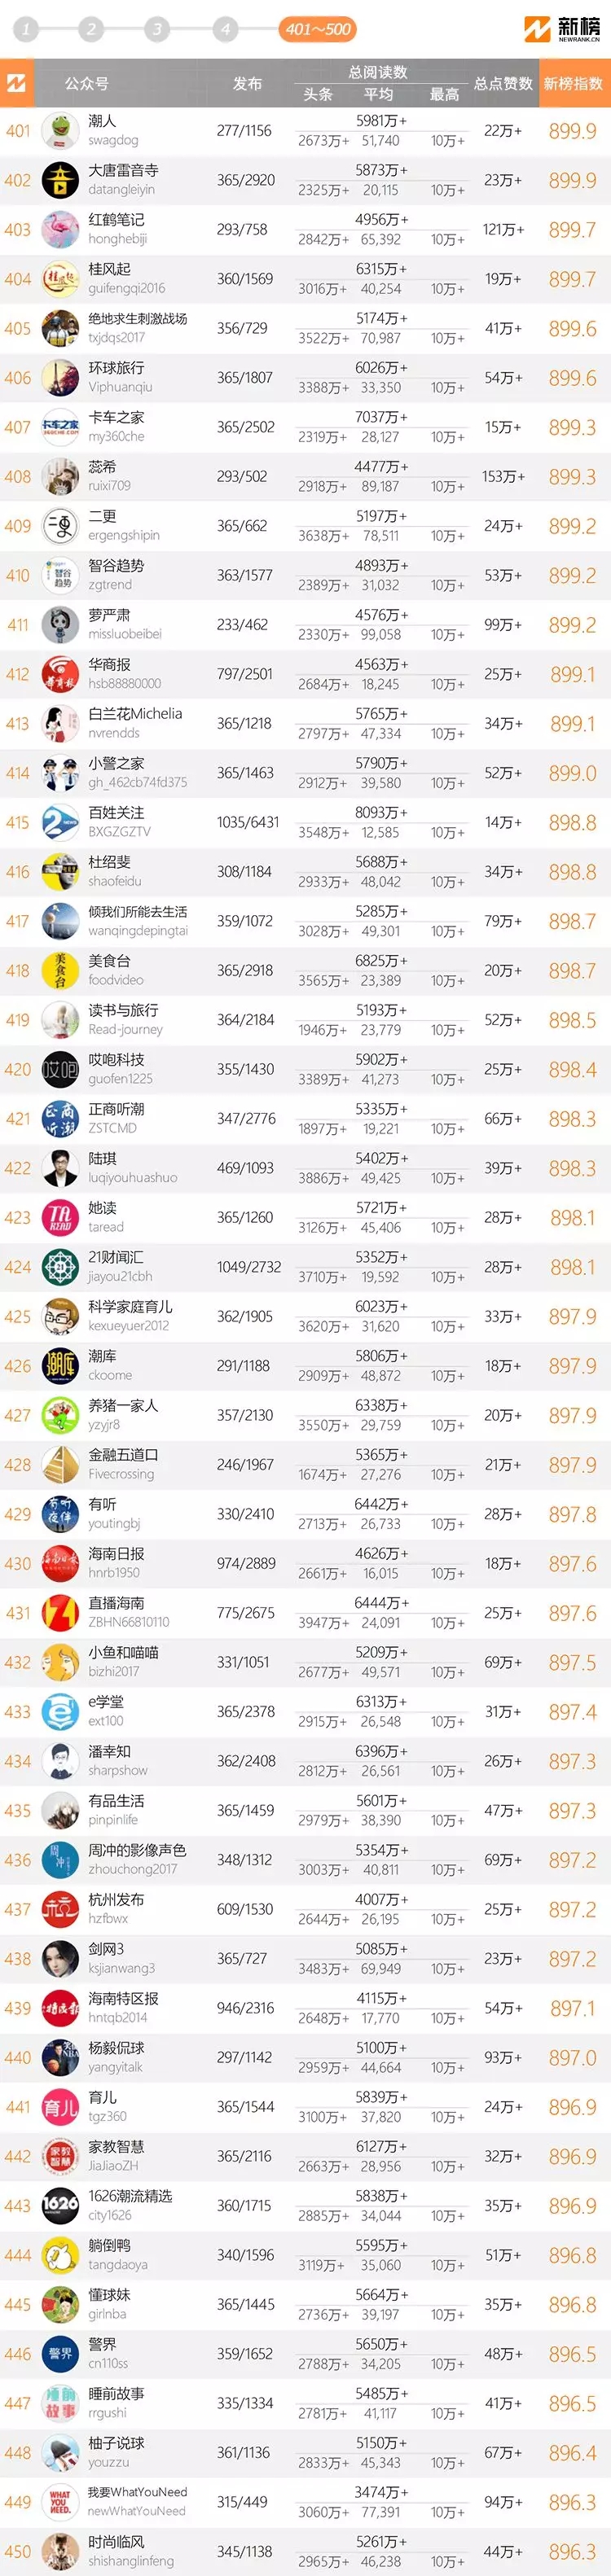 十大微信公眾號排名榜-2018中國微信500強排名榜(閱讀量排序)